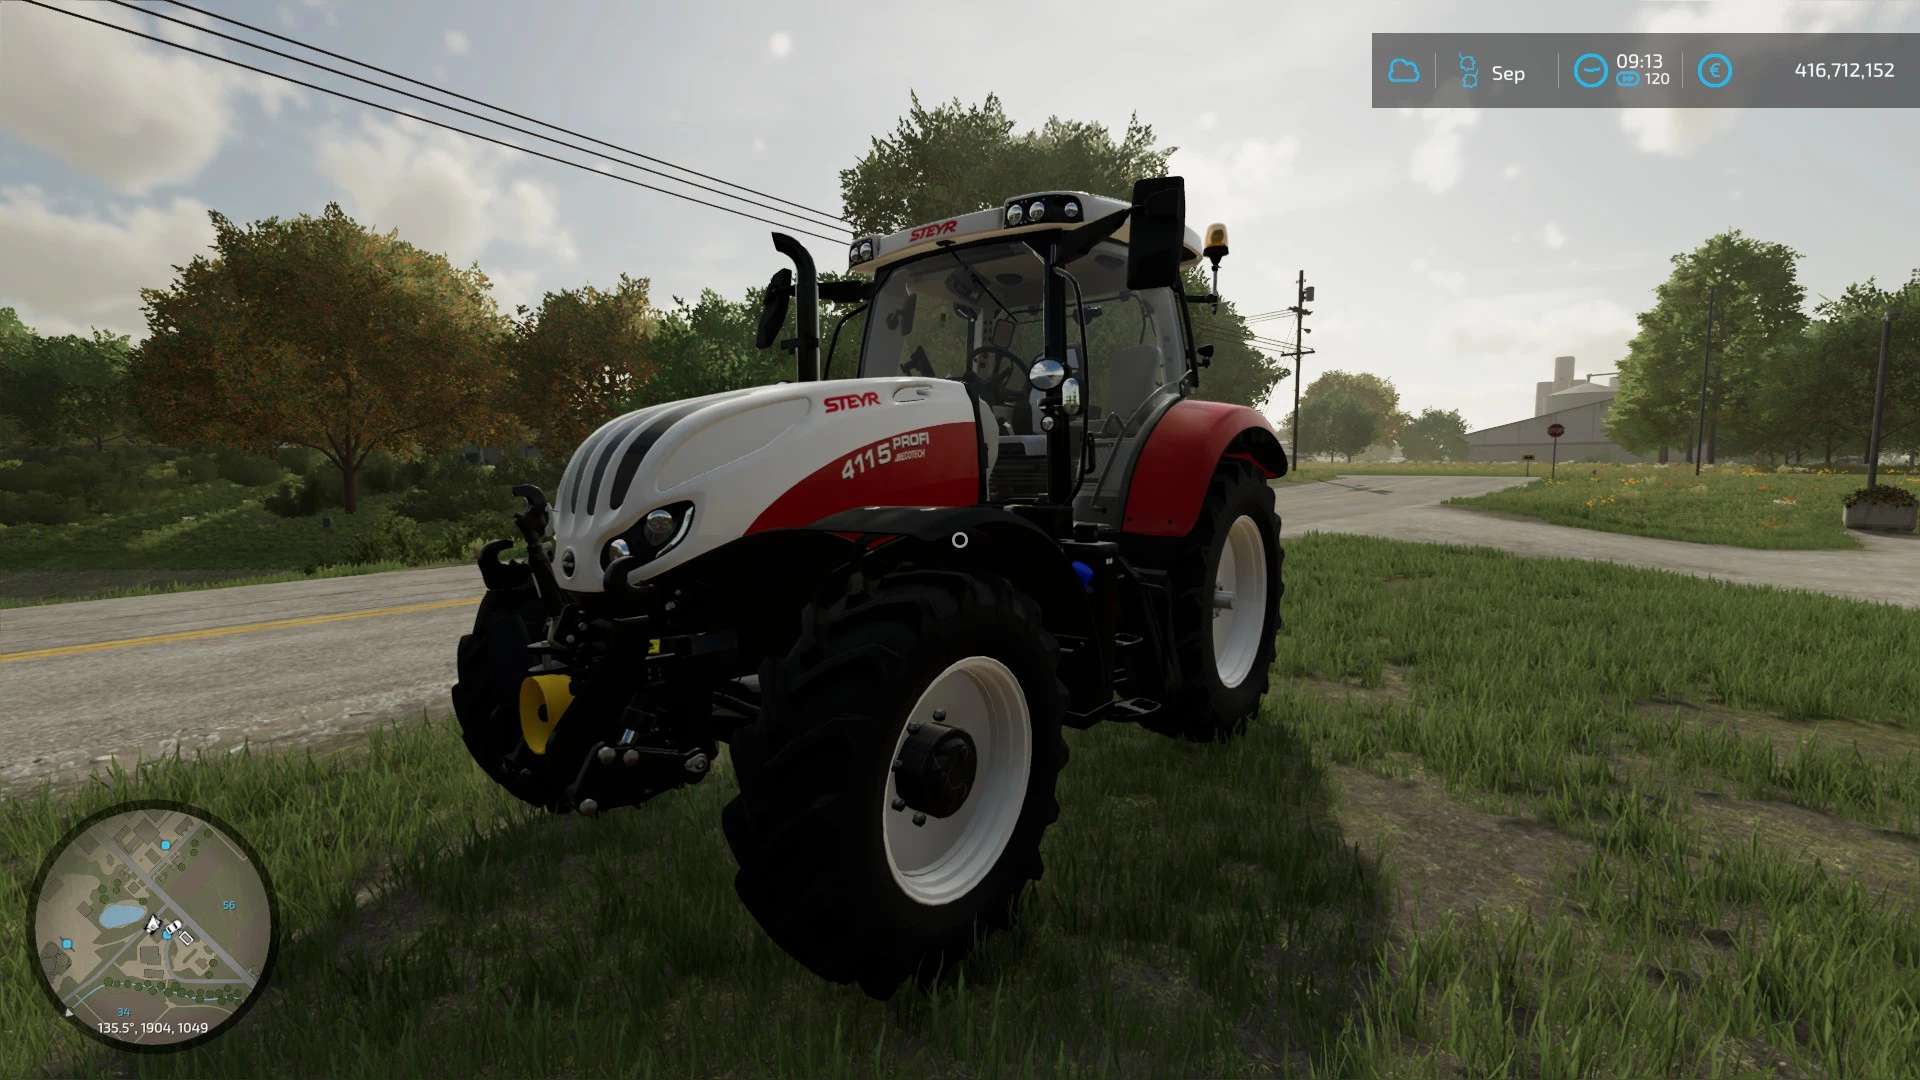 Steyr Profi Series V10 Fs22 Farming Simulator 22 Mod Fs22 Mod 6261